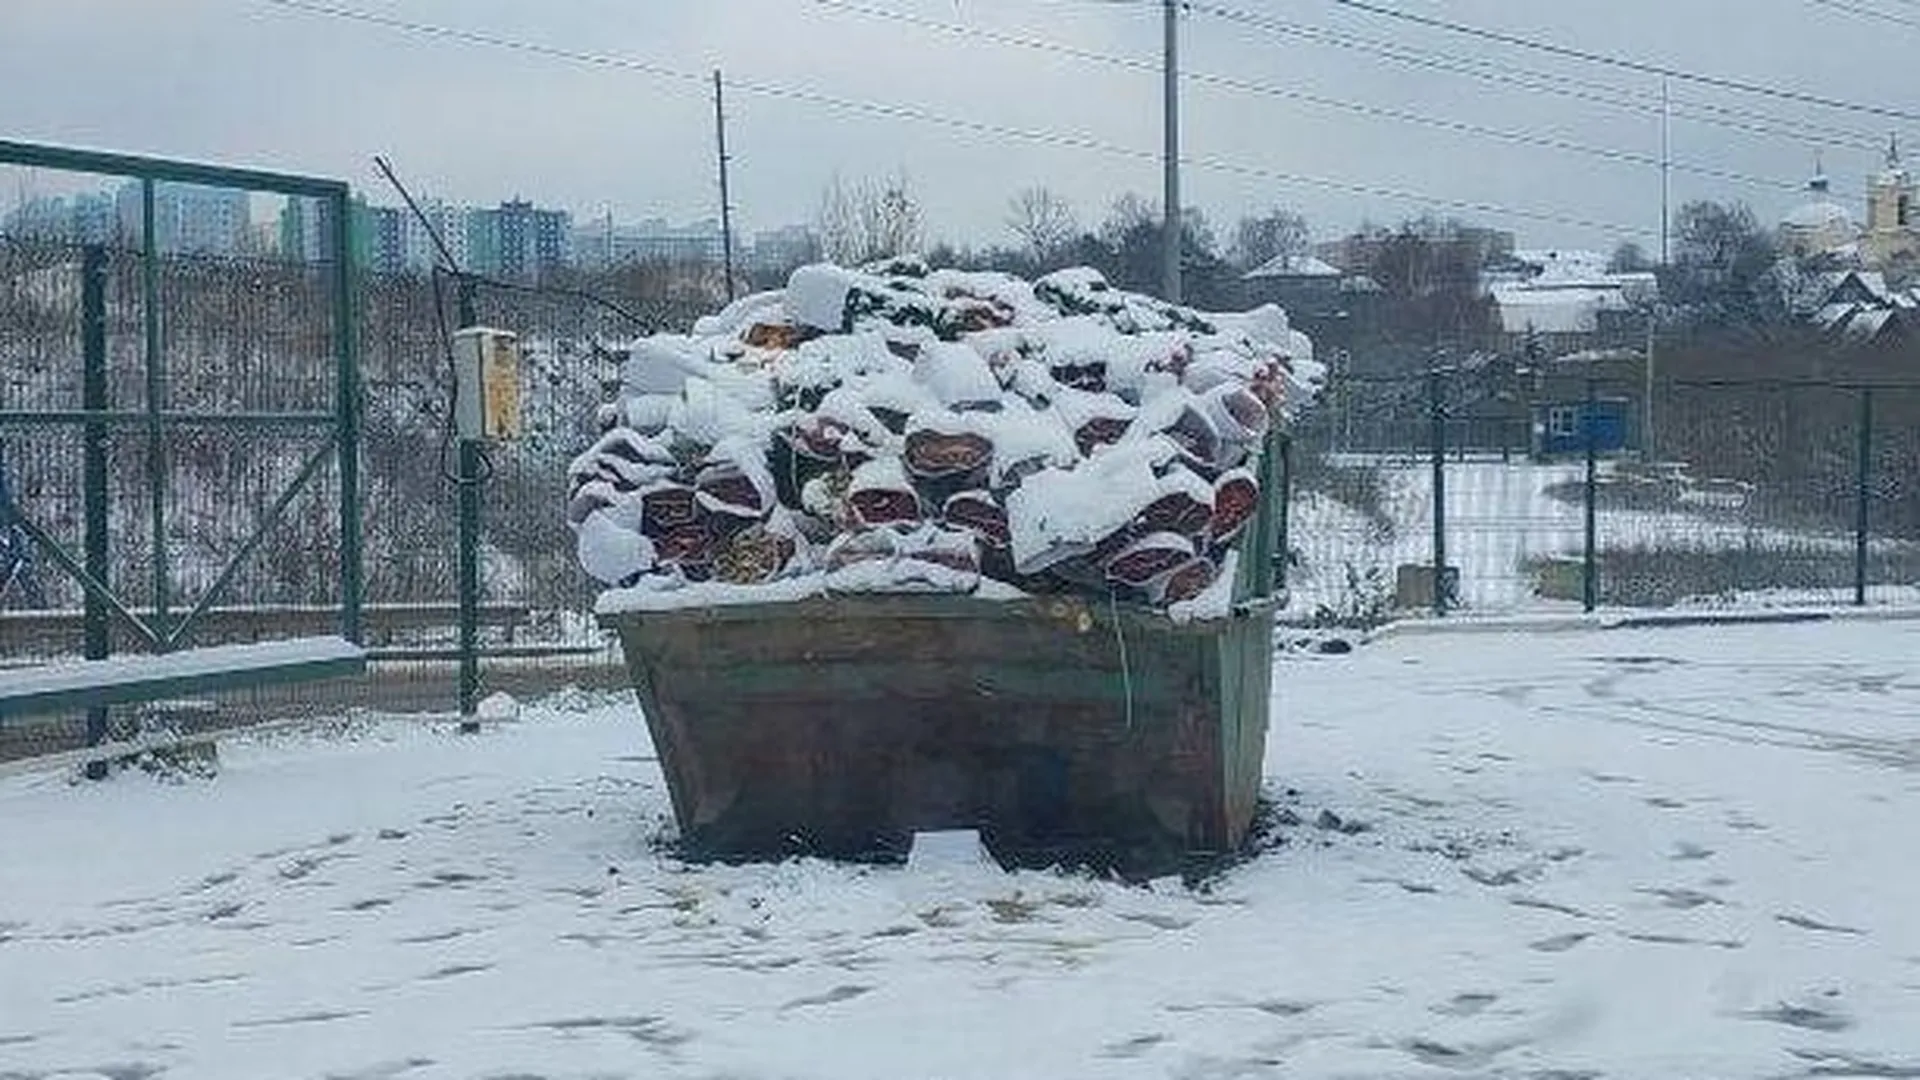 Мусорный контейнер, забитый букетами алых роз, обнаружили в Видном